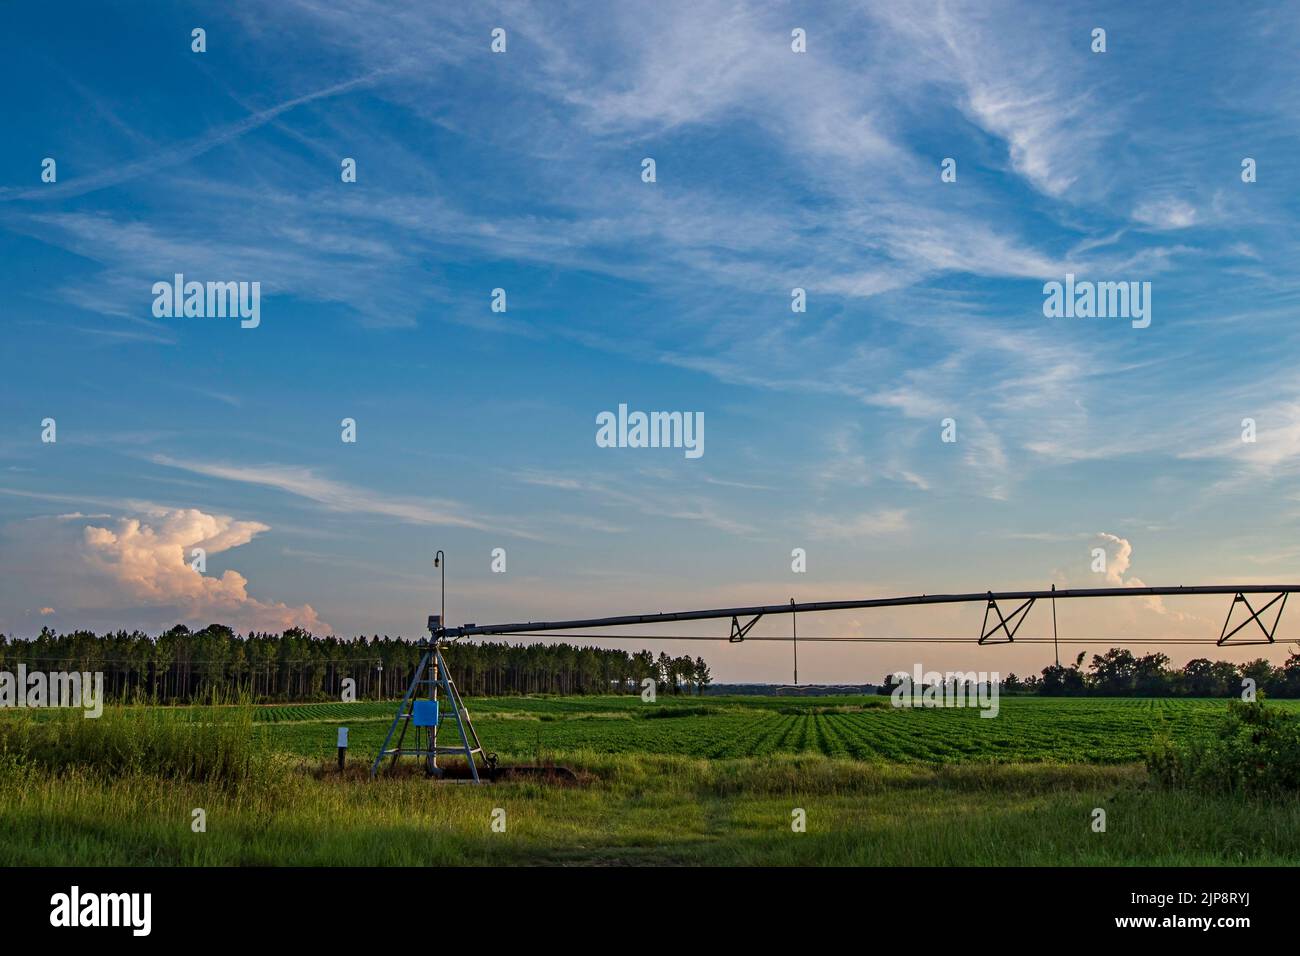 Bellissimo paesaggio agricolo di un impianto di irrigazione centrale a perno in un campo di arachidi (Arachis hypogaea) al tramonto nella Georgia meridionale, USA. Foto Stock